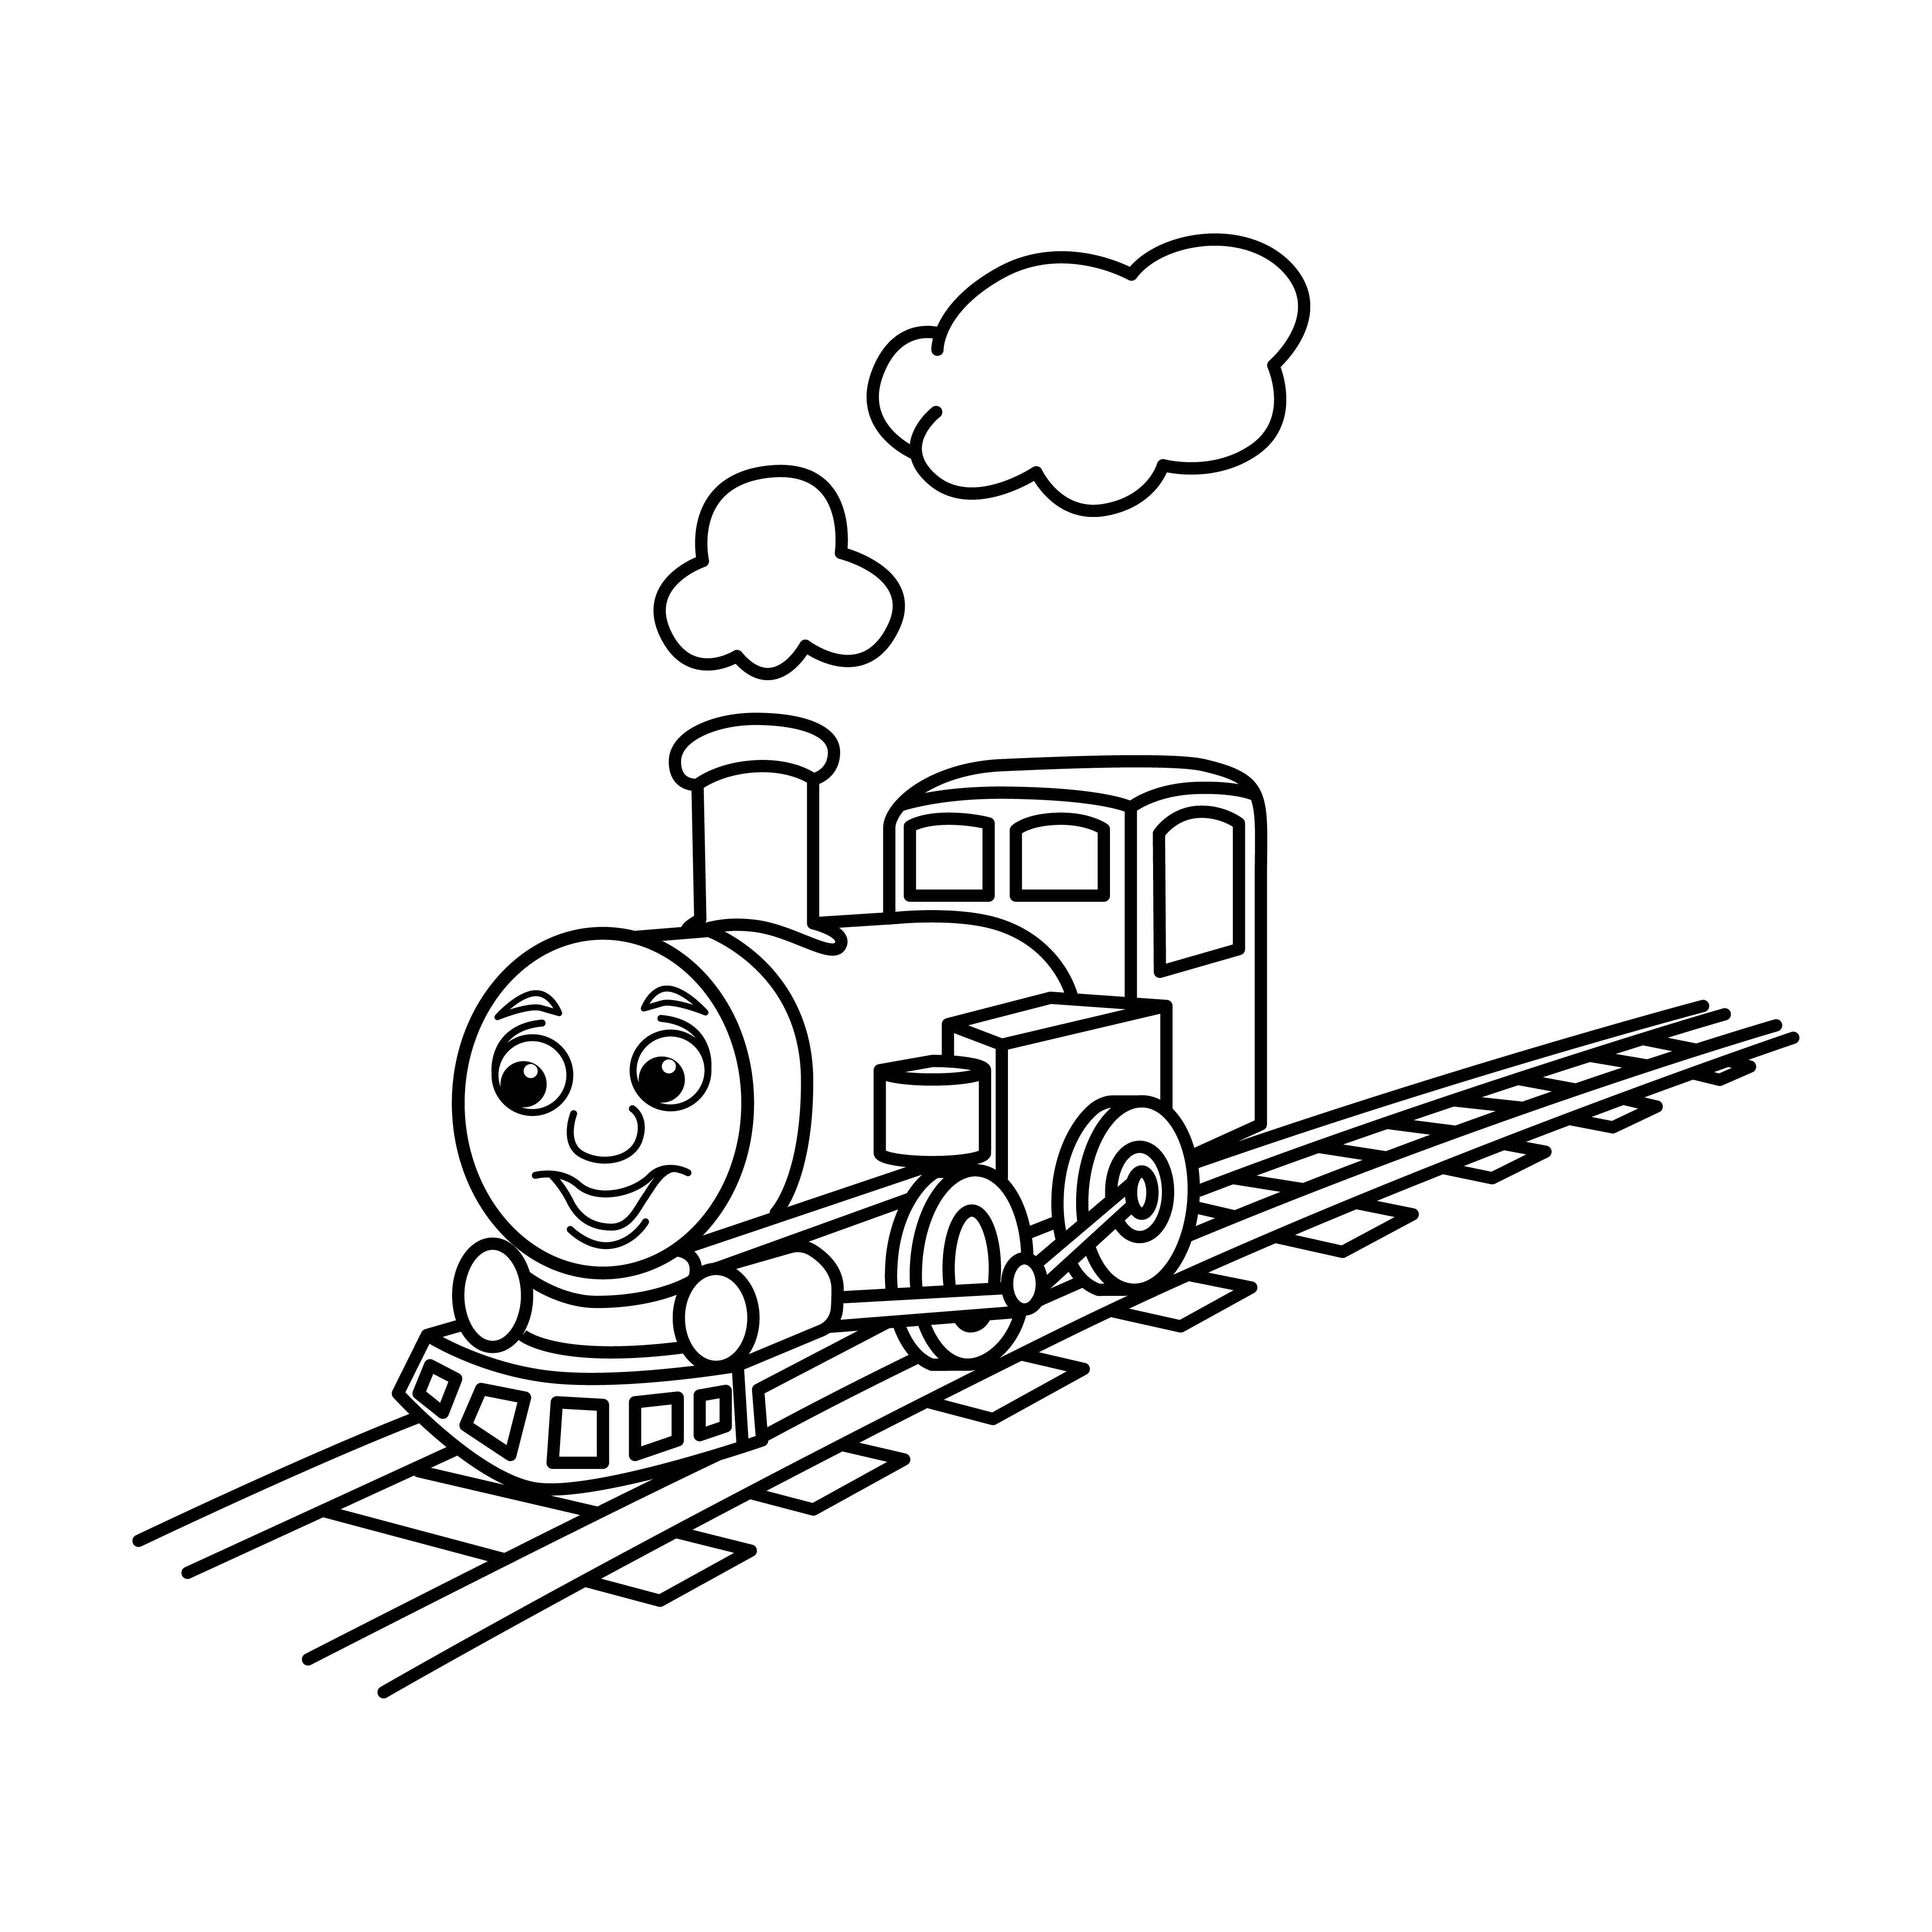 Раскраска очаровательный игрушечный поезд с лицом на путях формата А4 в высоком качестве